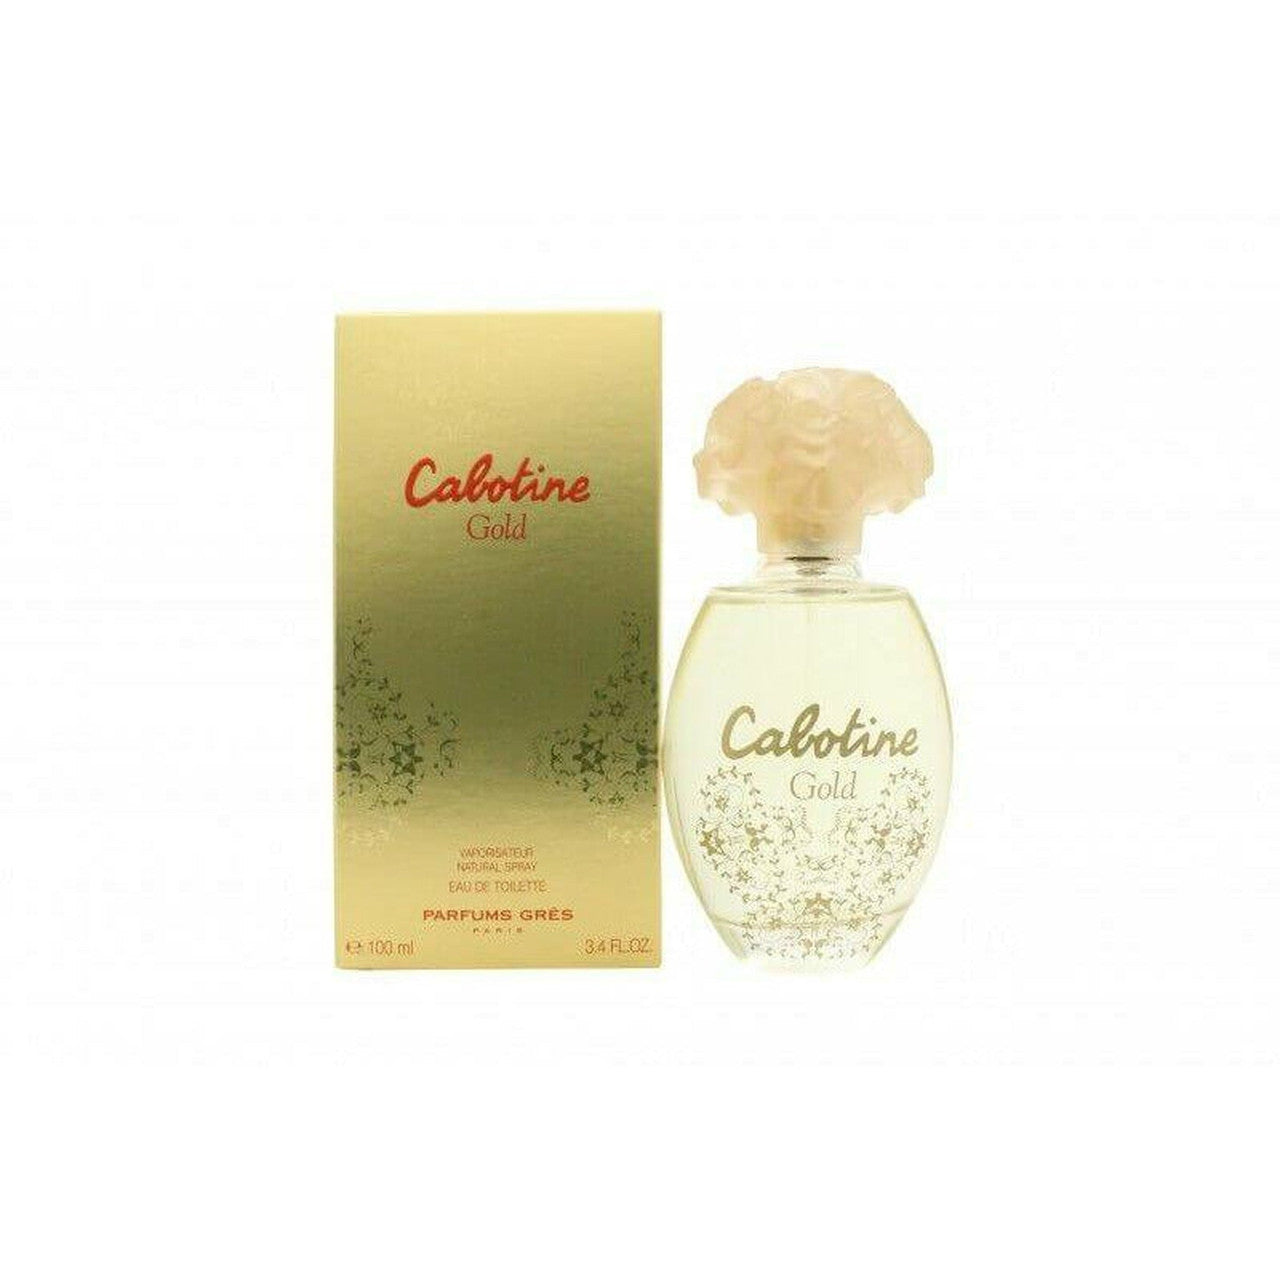 Gres Parfums Cabotine Gold Eau de Toilette 100ml Spray